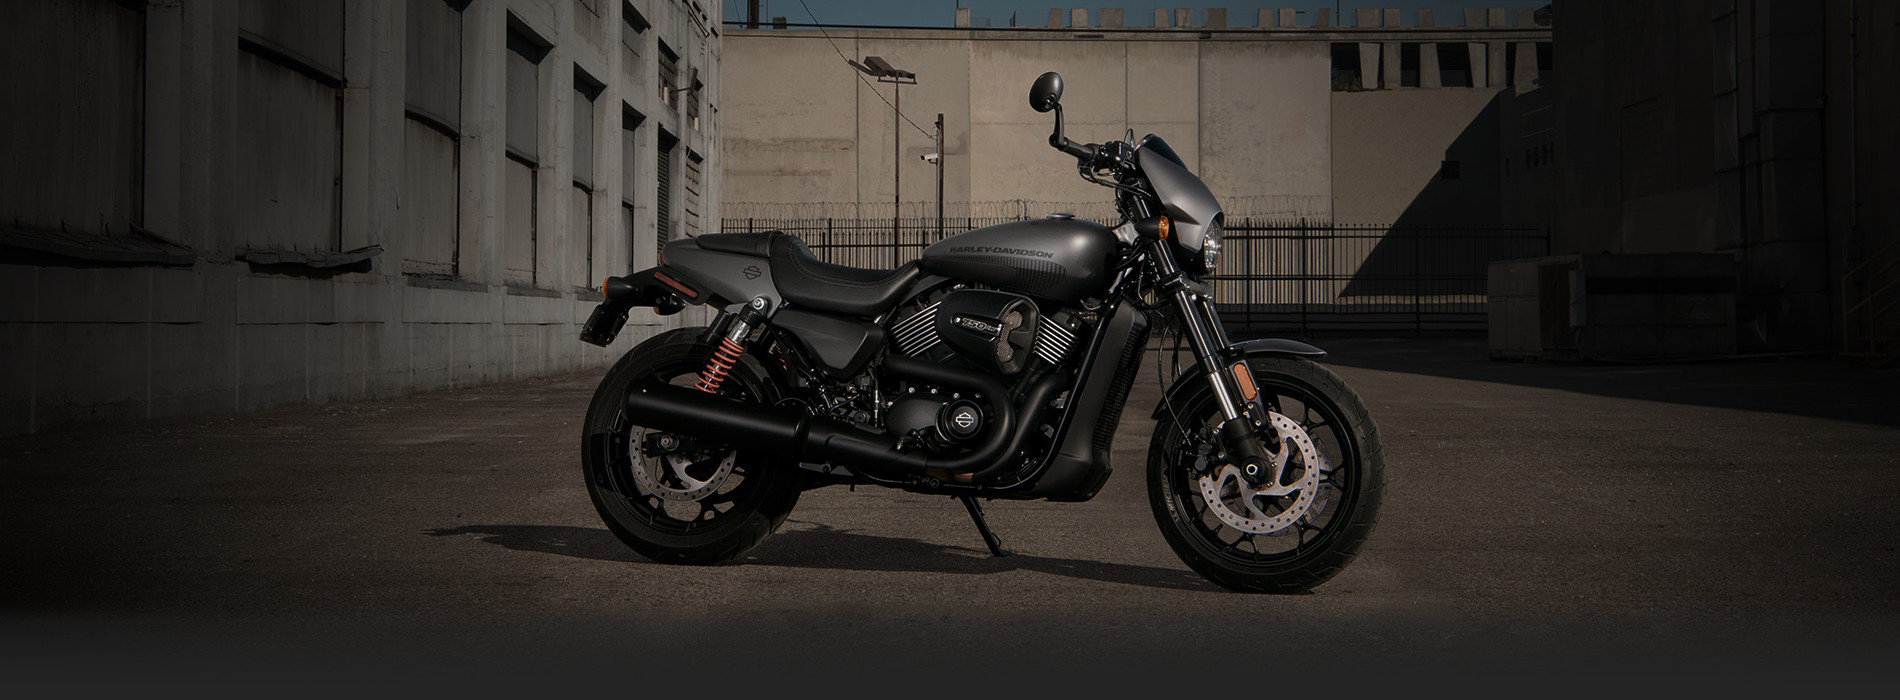 Street Rod: Το νέο μοντέλο της Harley Davidson είναι η επιτομή του εκλεπτυσμένου στιλ